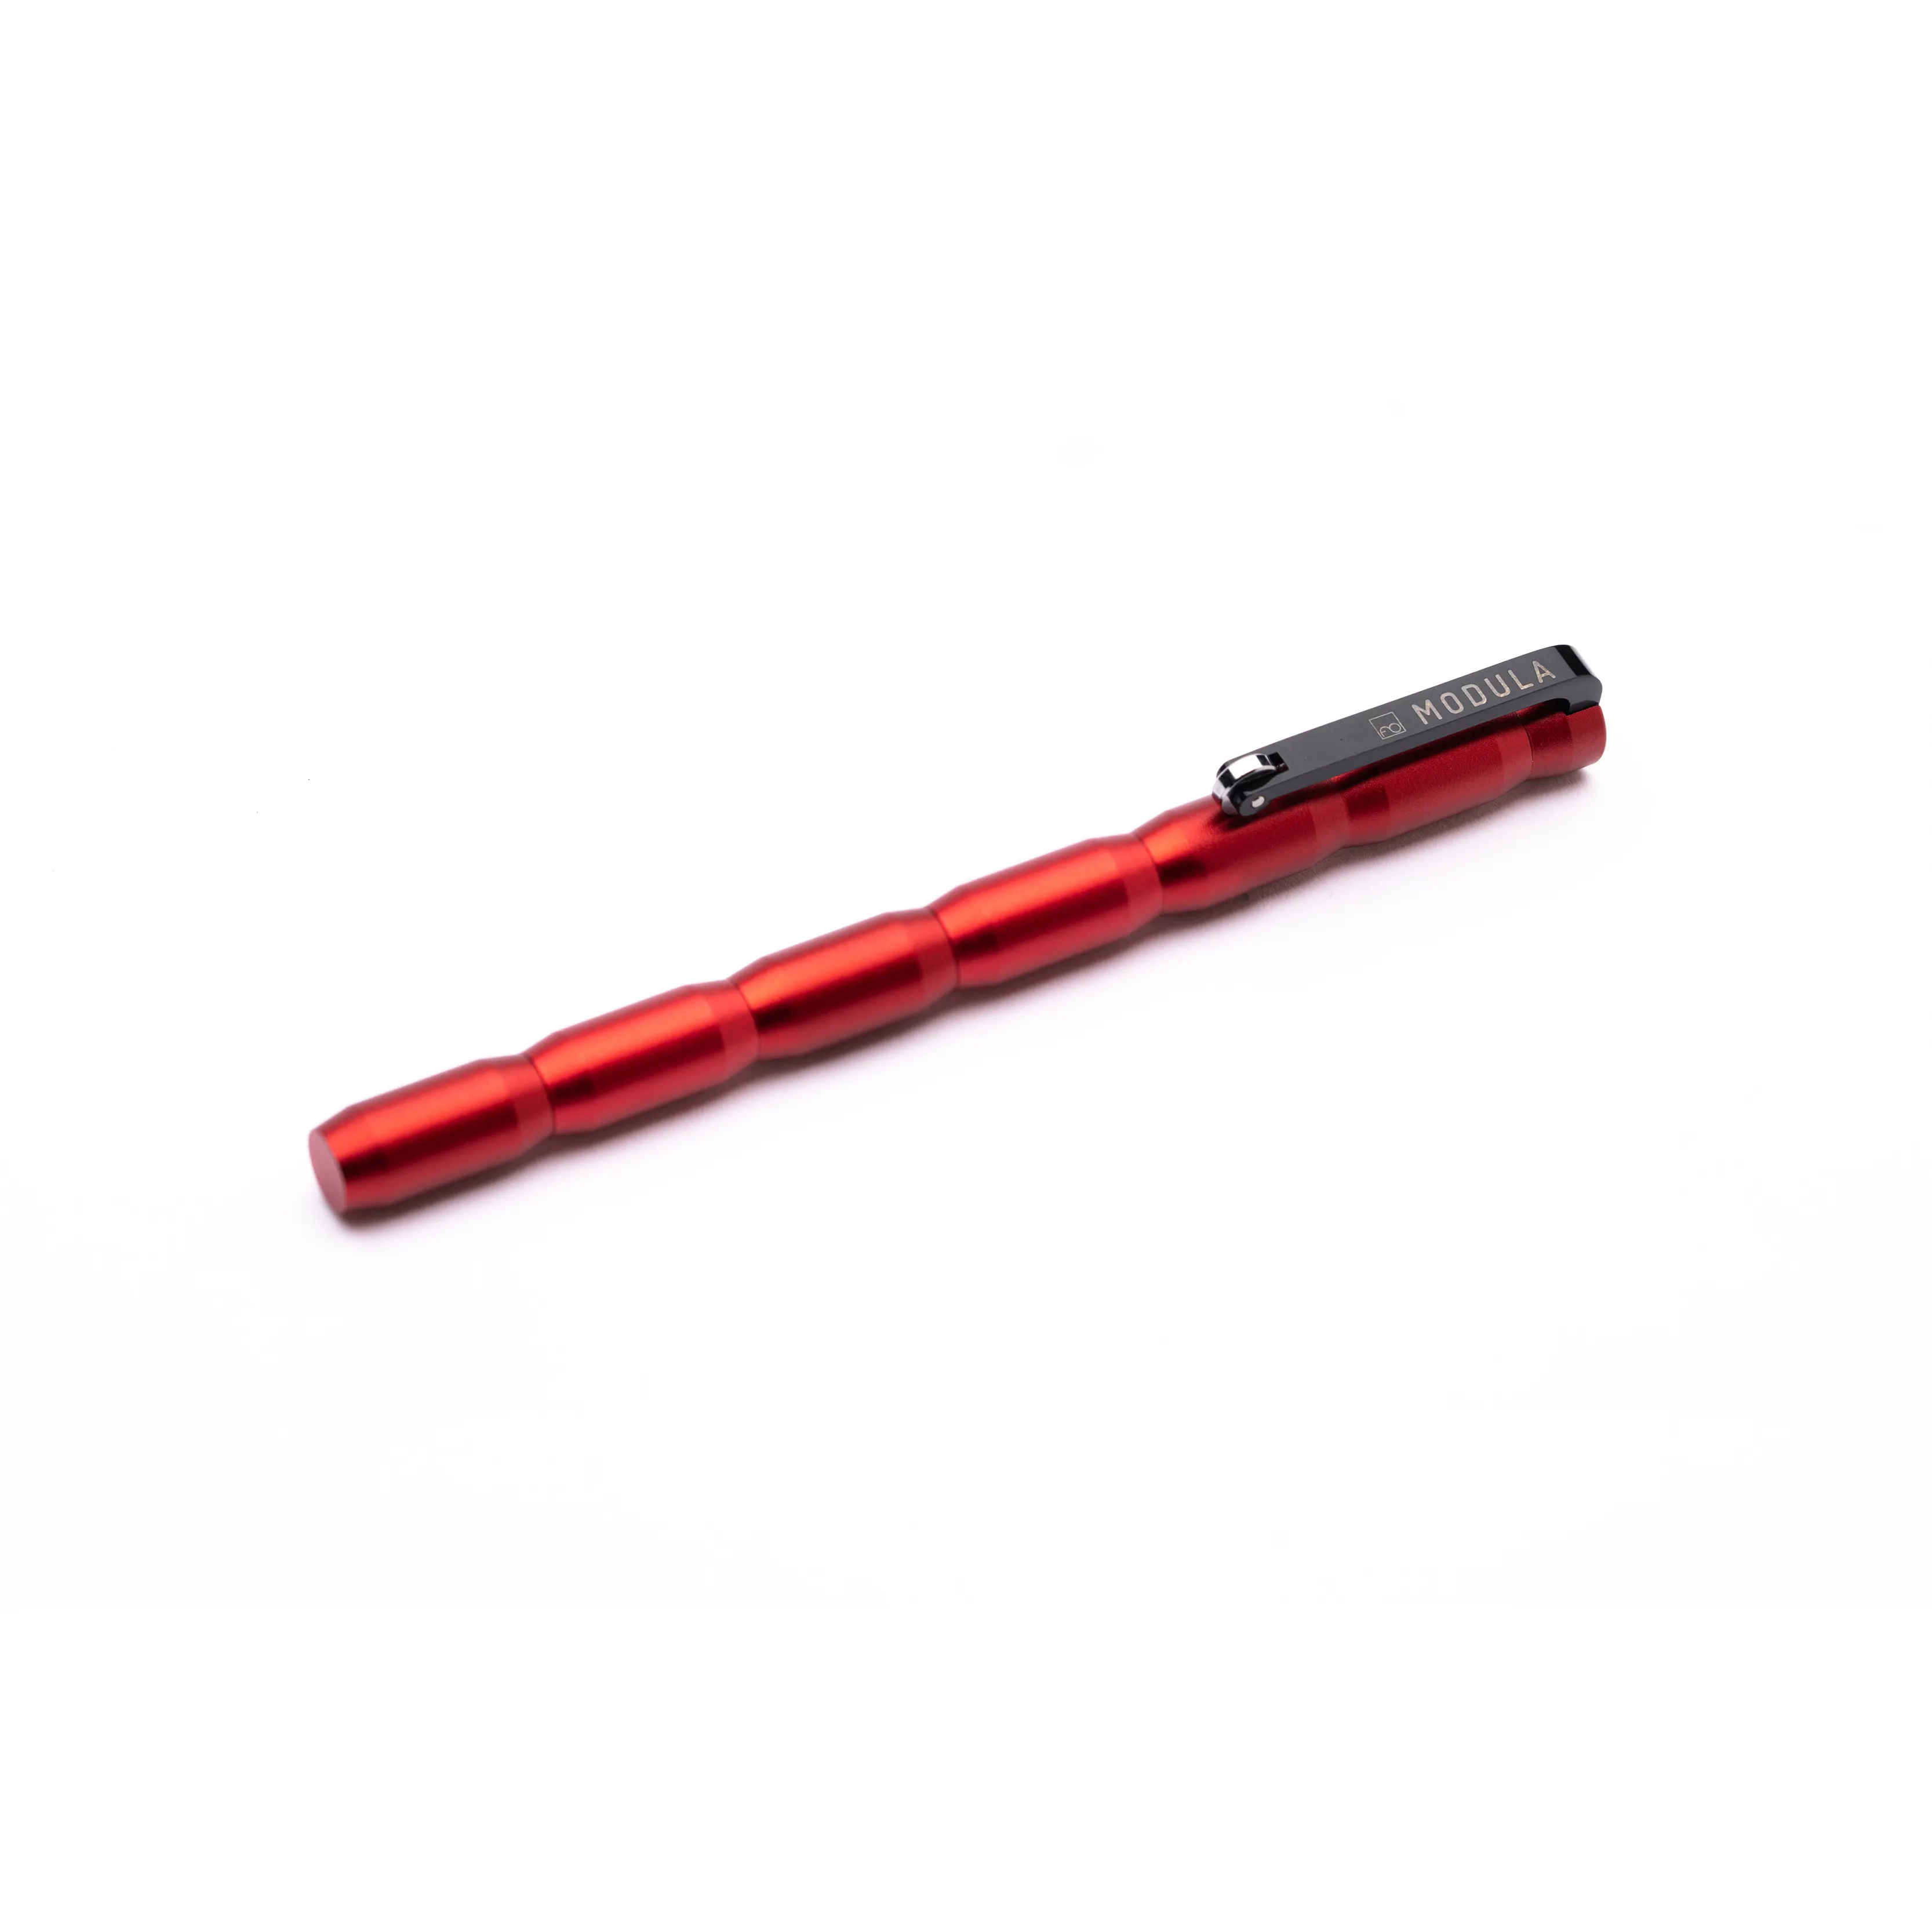 Nuova innovativa penna modulare con ricarica a sfera e Design sostituibile con punta In grafite In italia per modulo regalo aziendale rosso